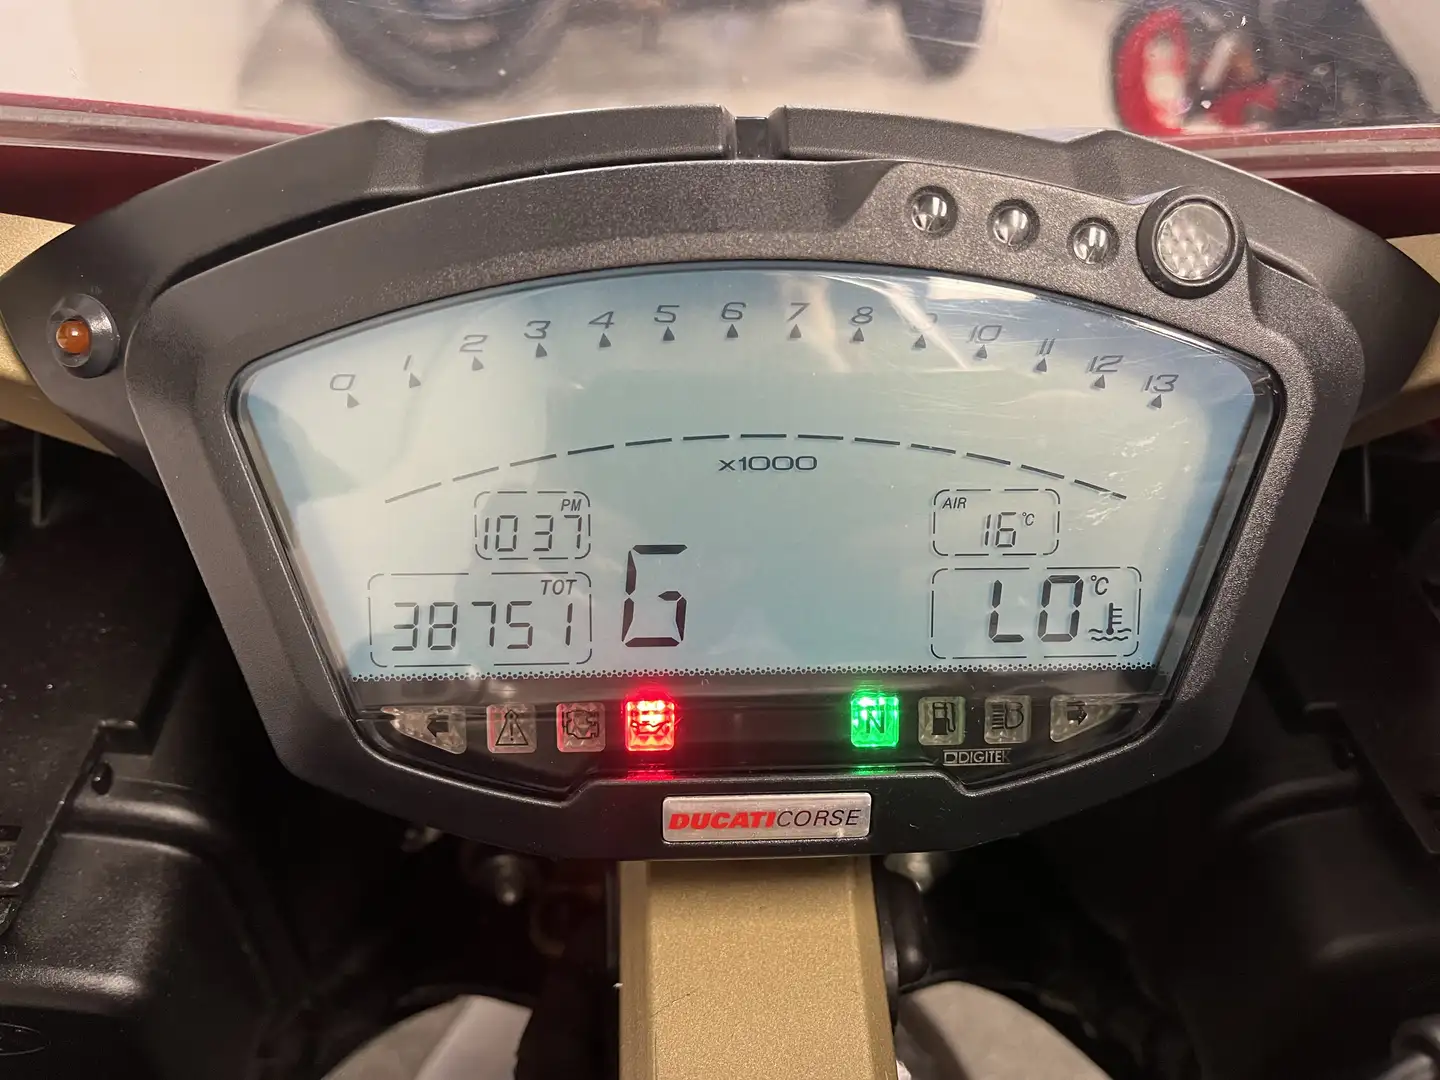 Ducati 848 Rojo - 2